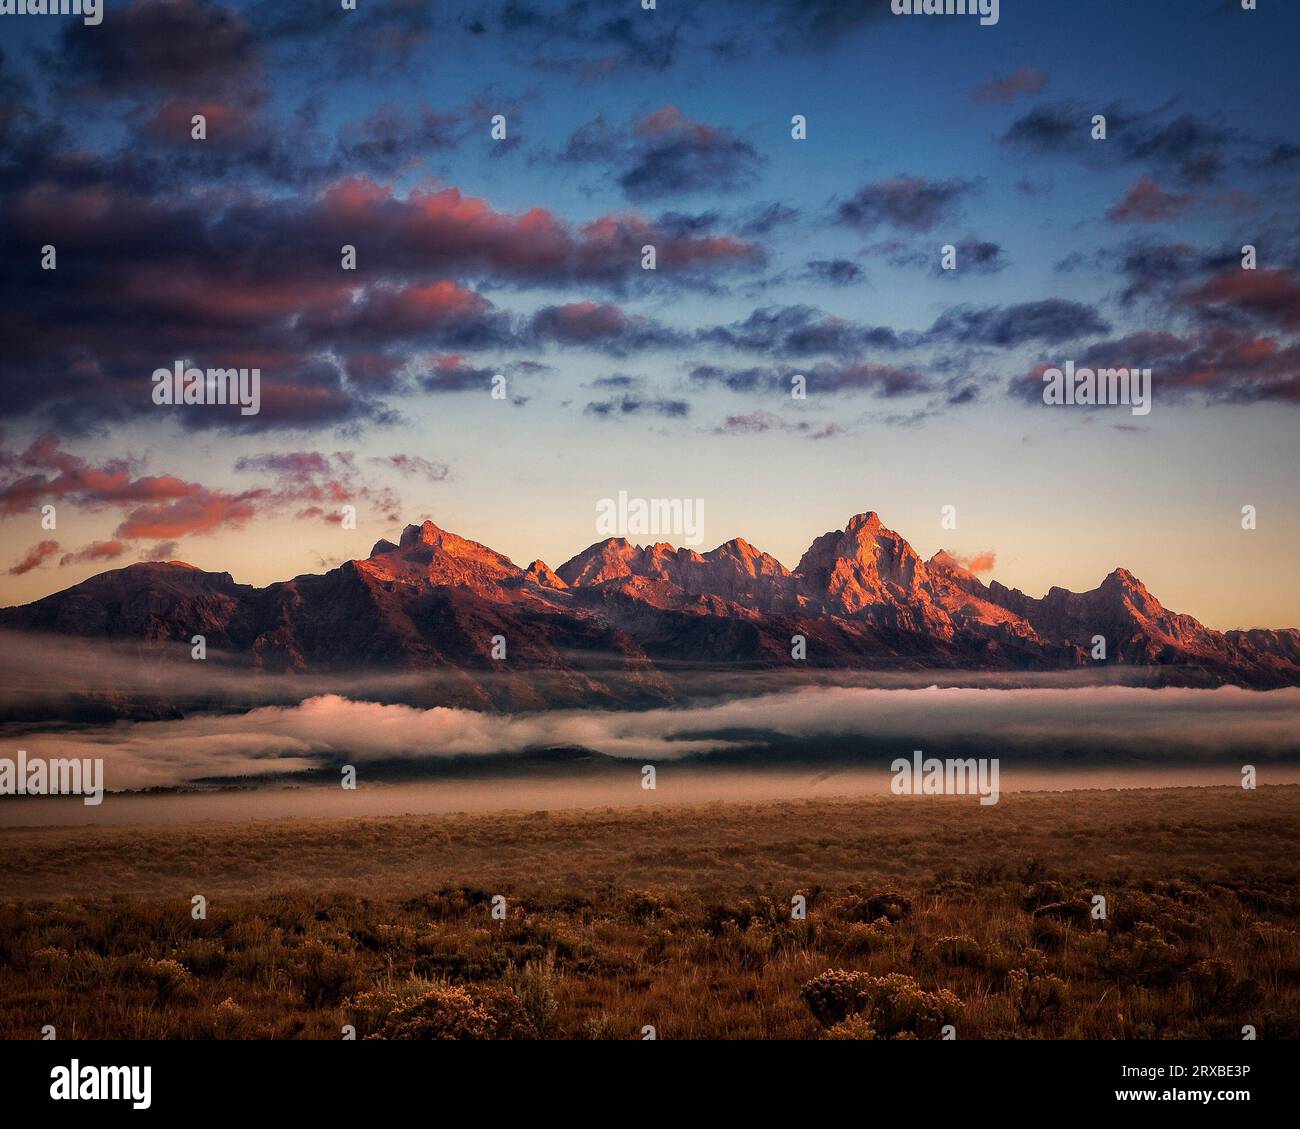 La catena montuosa di Teton, nel Wyoming, si illumina all'alba. Foto Stock